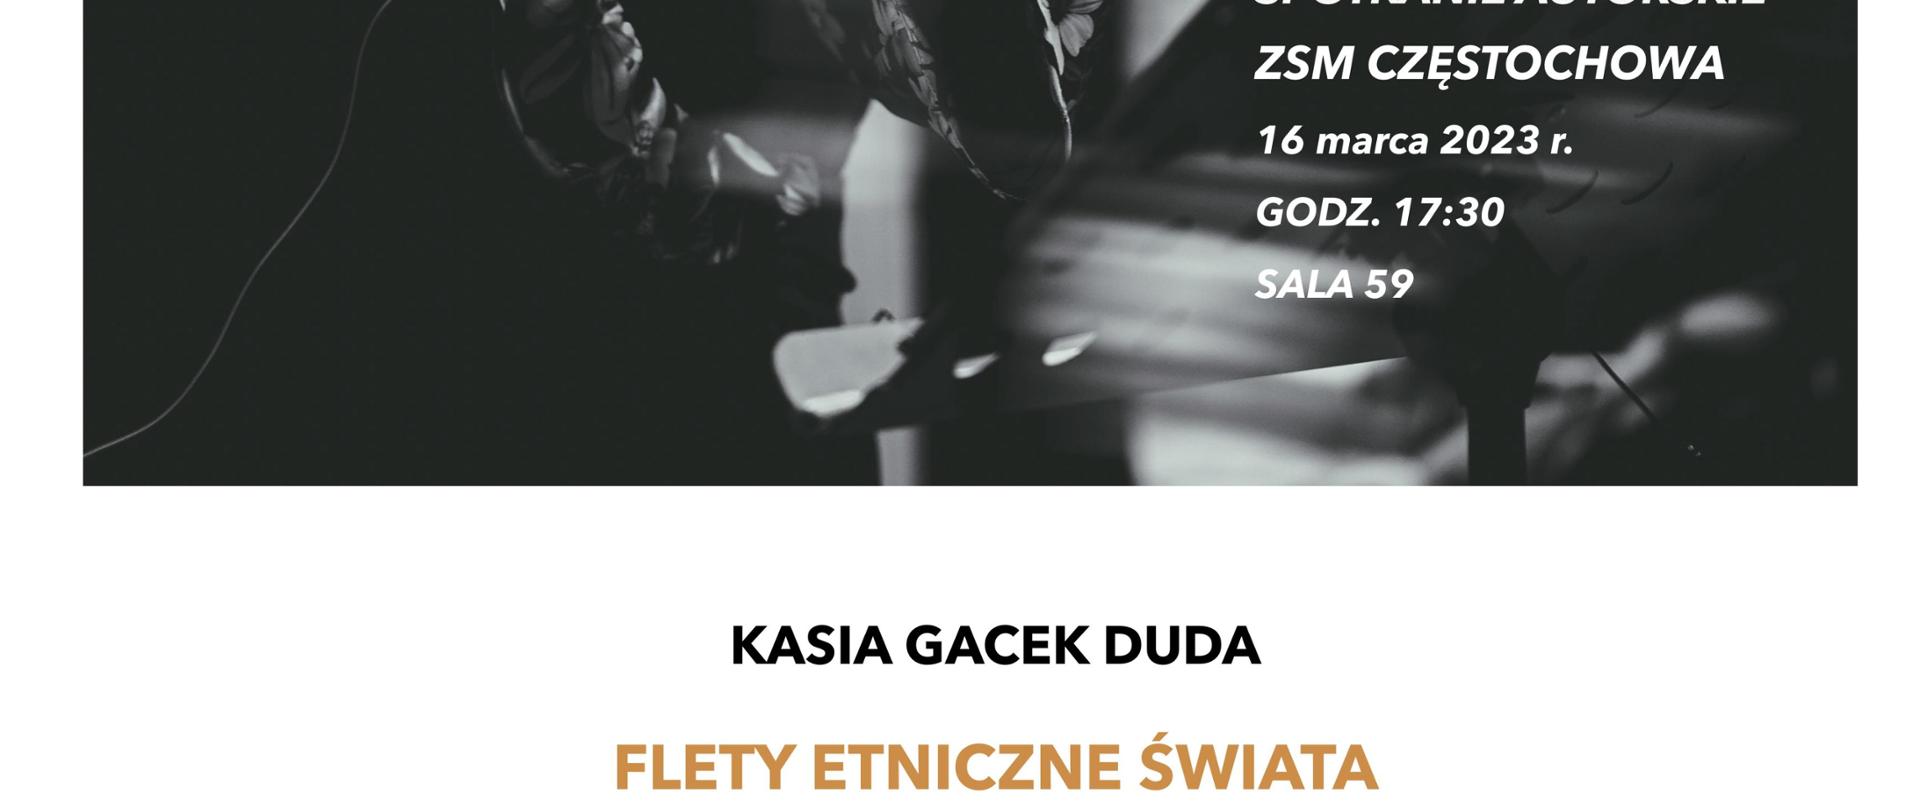 Na białym tle zdjęcie Katarzyny Gacek-Dudy. Na zdjęciu godzina, data i miejsce spotkania.